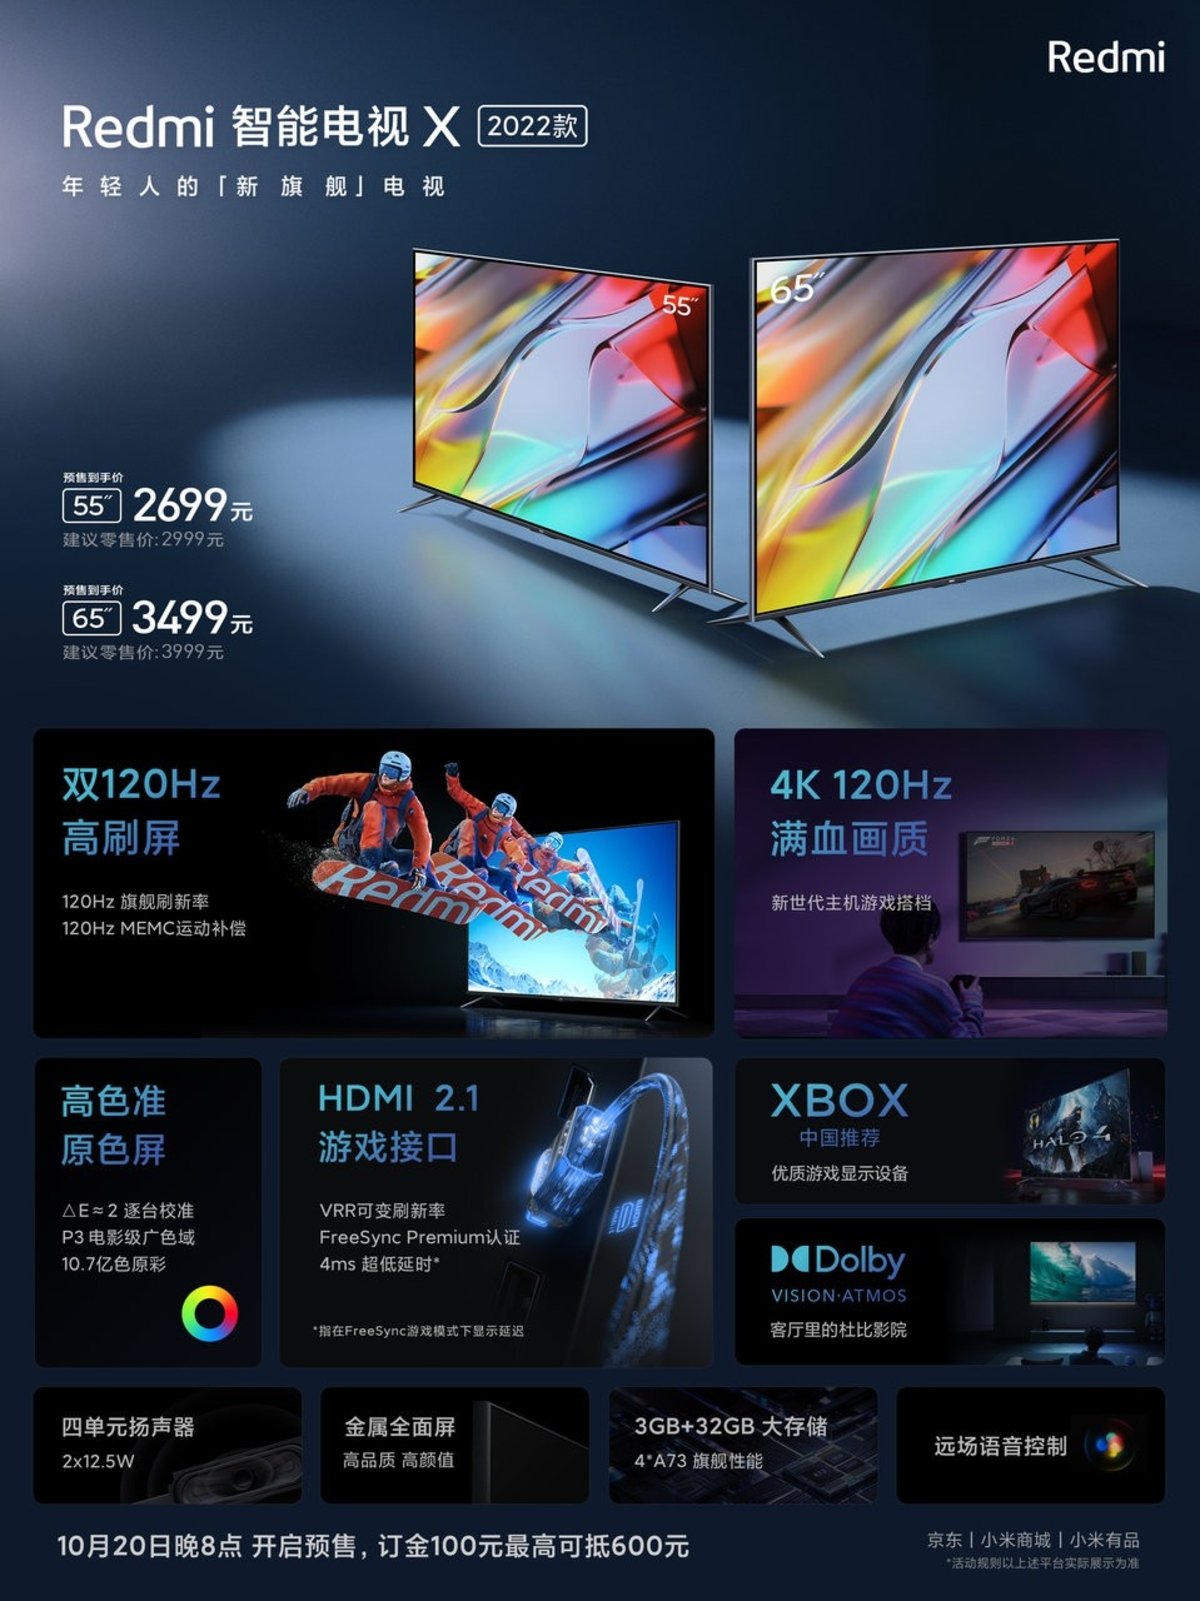 Redmi स्मार्ट टीवी X 2022 55y65 इंच-फीचर्स